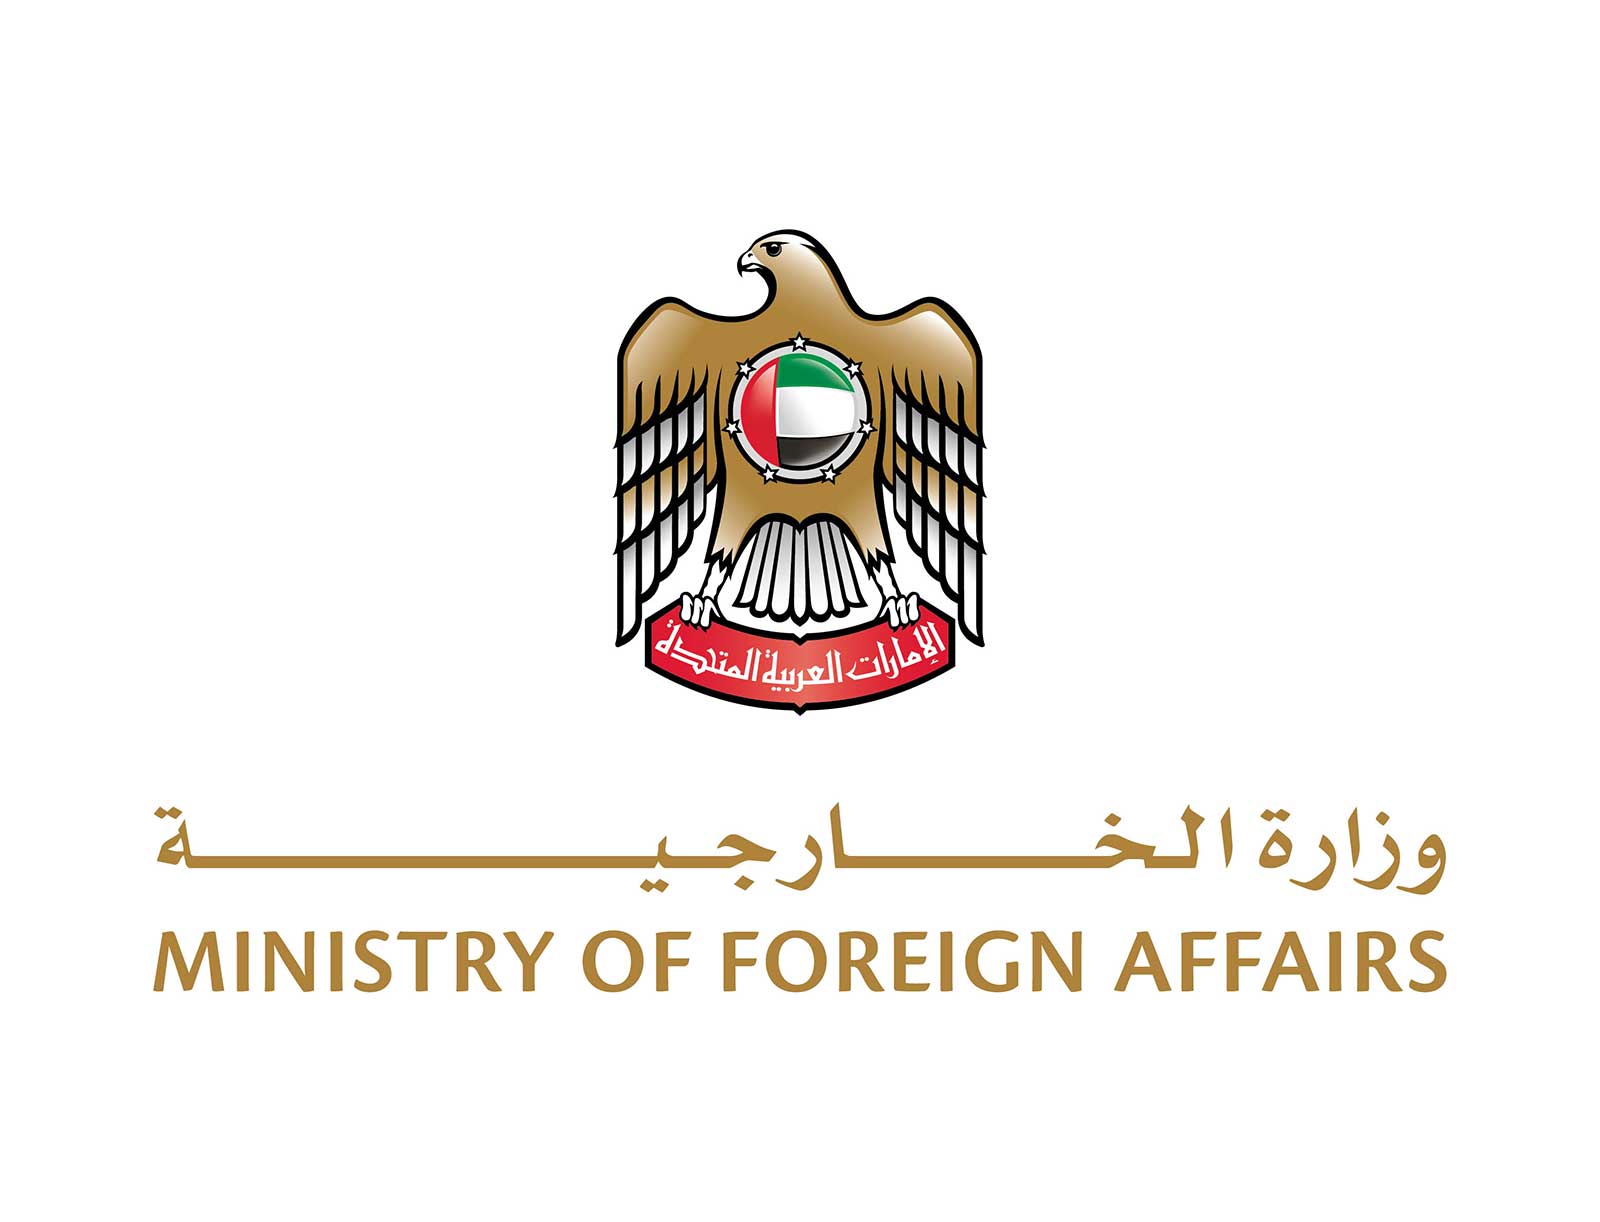 الإمارات وكوسوفو توقعان مذكرة تفاهم بشأن الإعفاء المتبادل من تأشيرة الدخول للبلدين